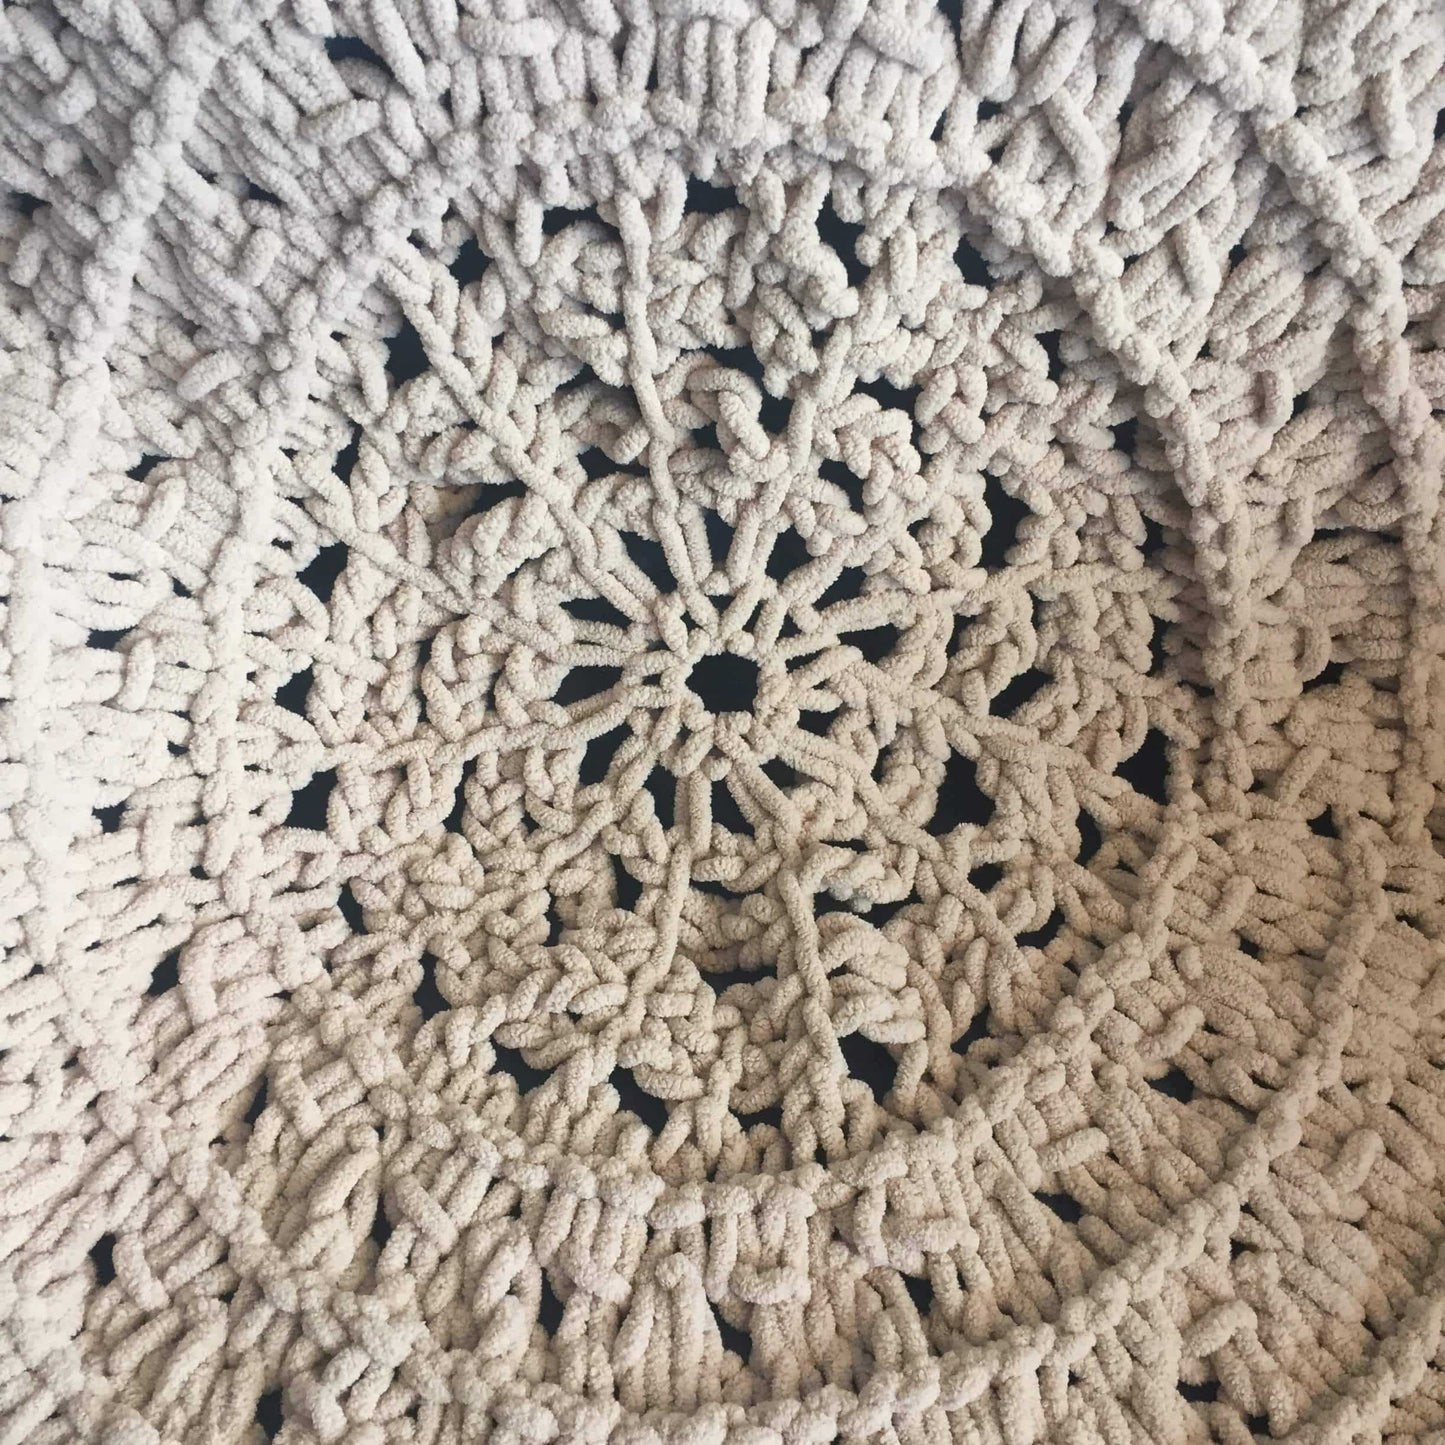 circular knit throw